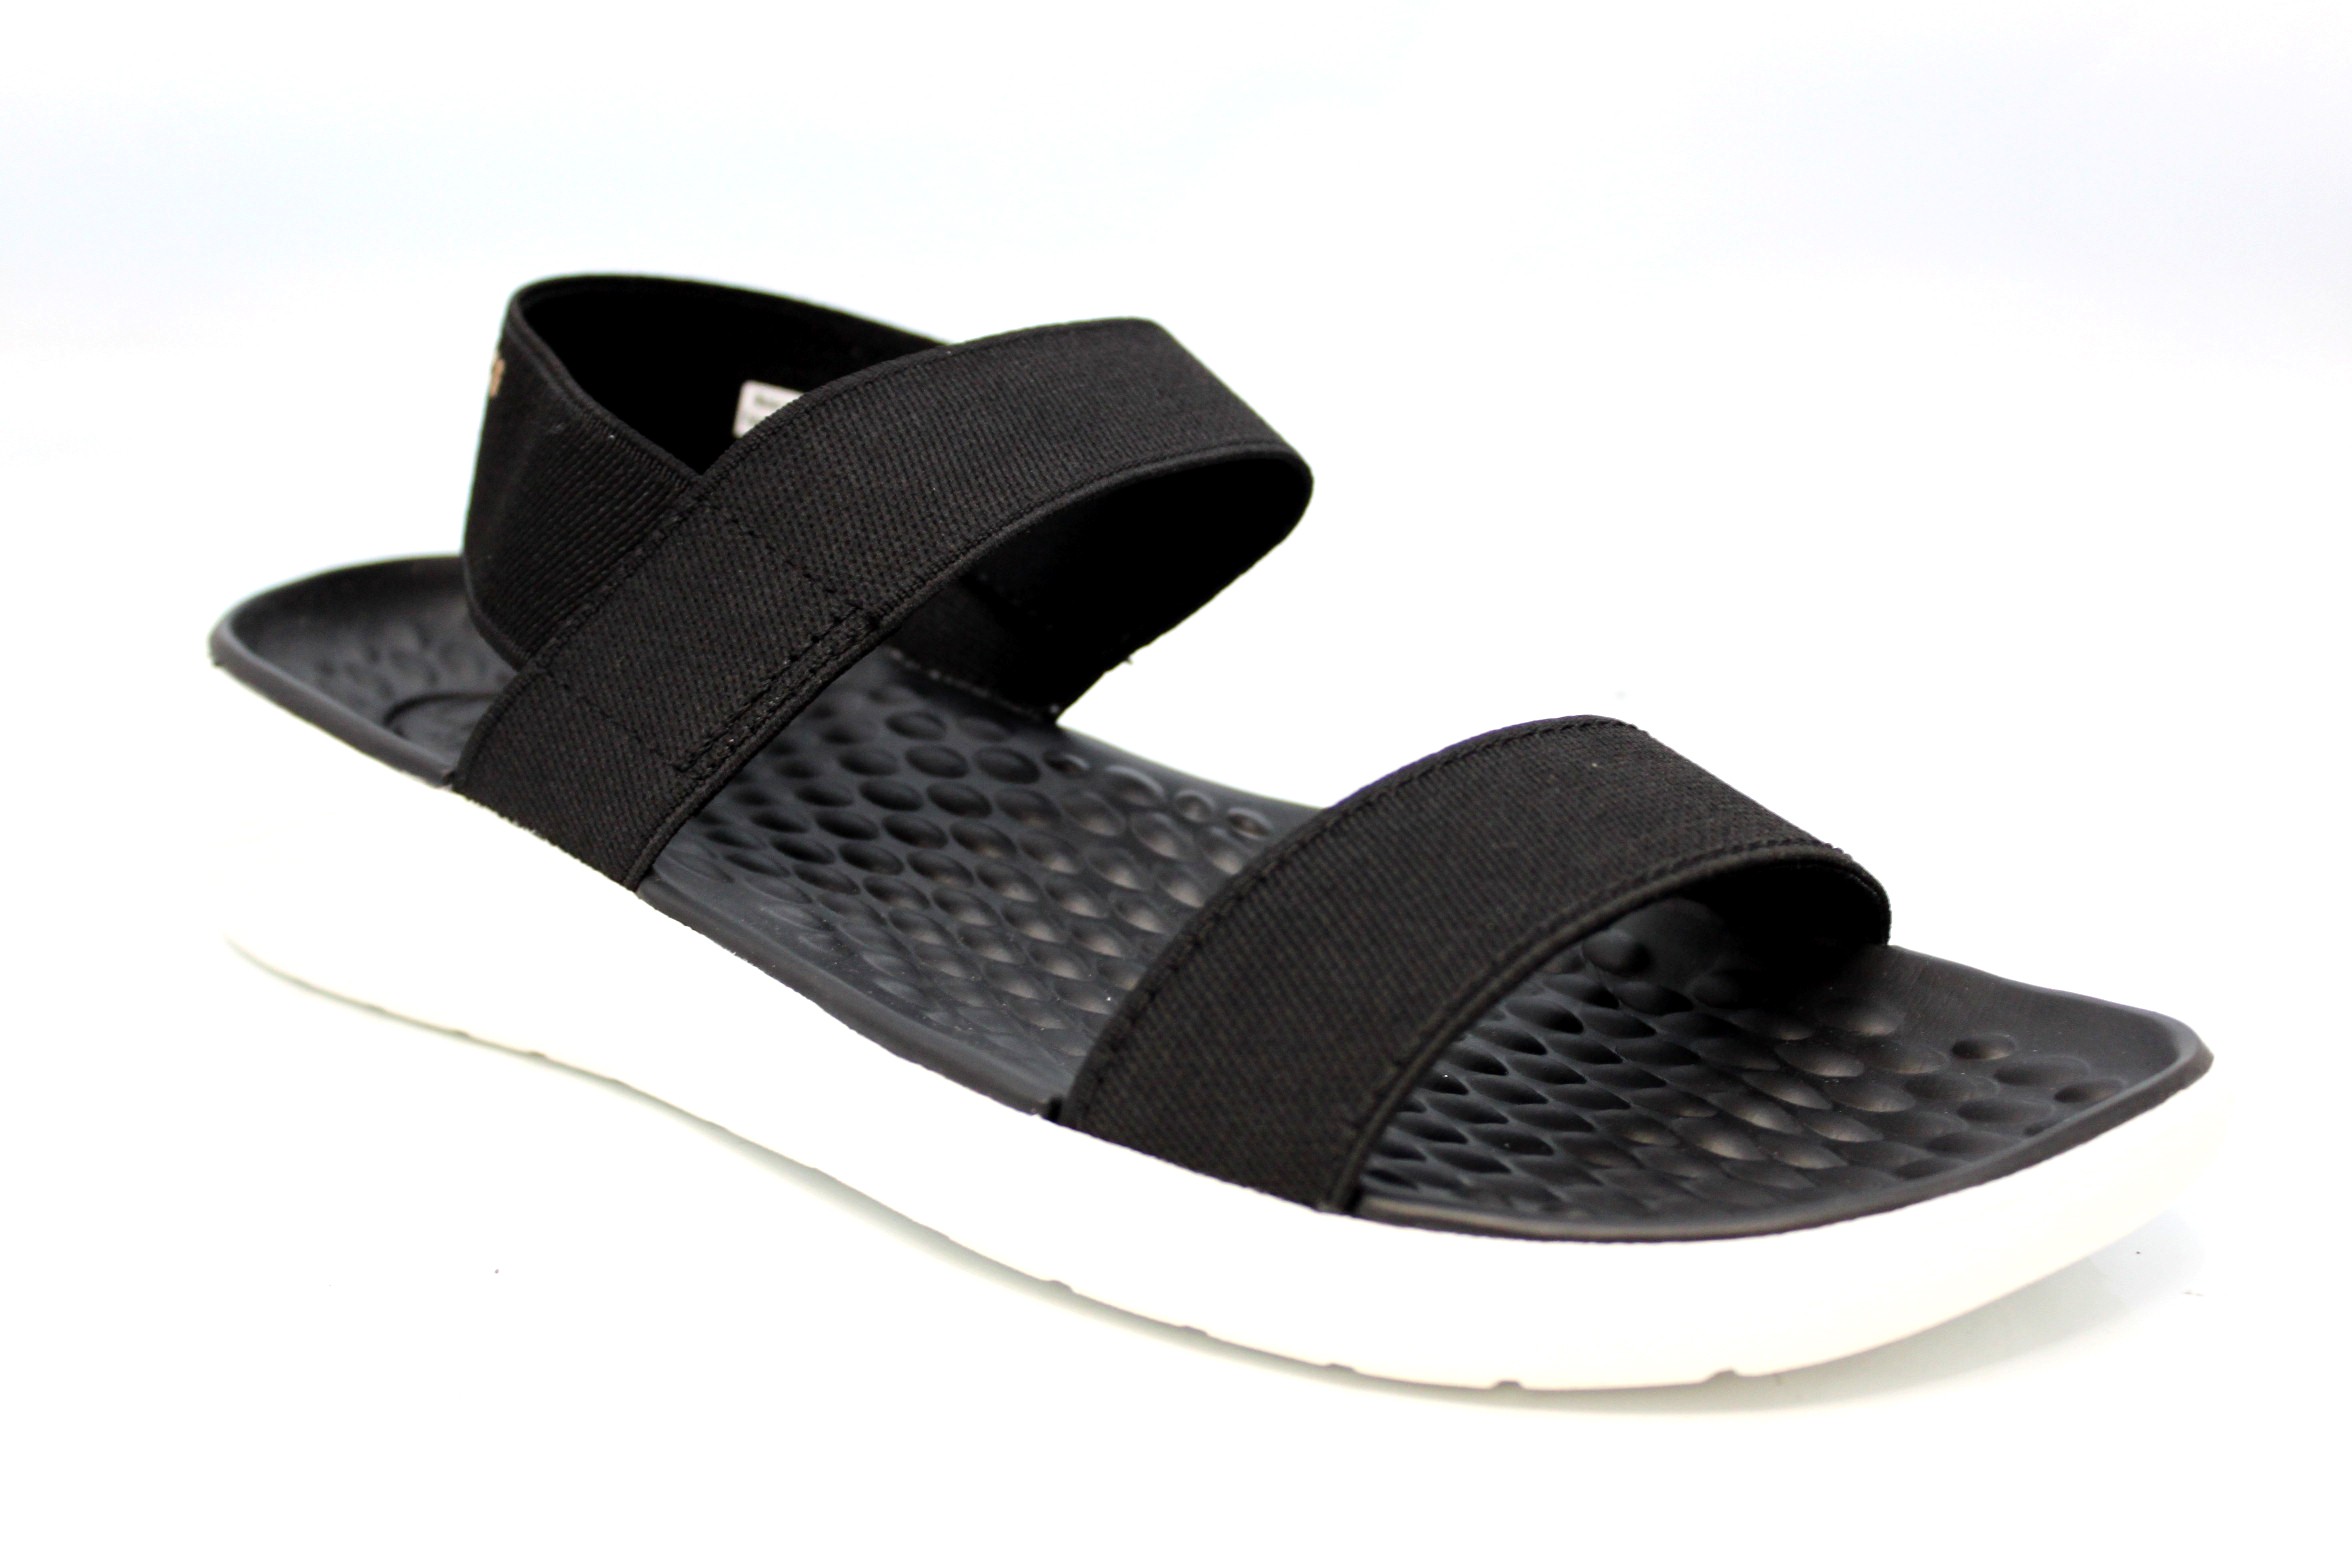 crocs elastic strap sandals